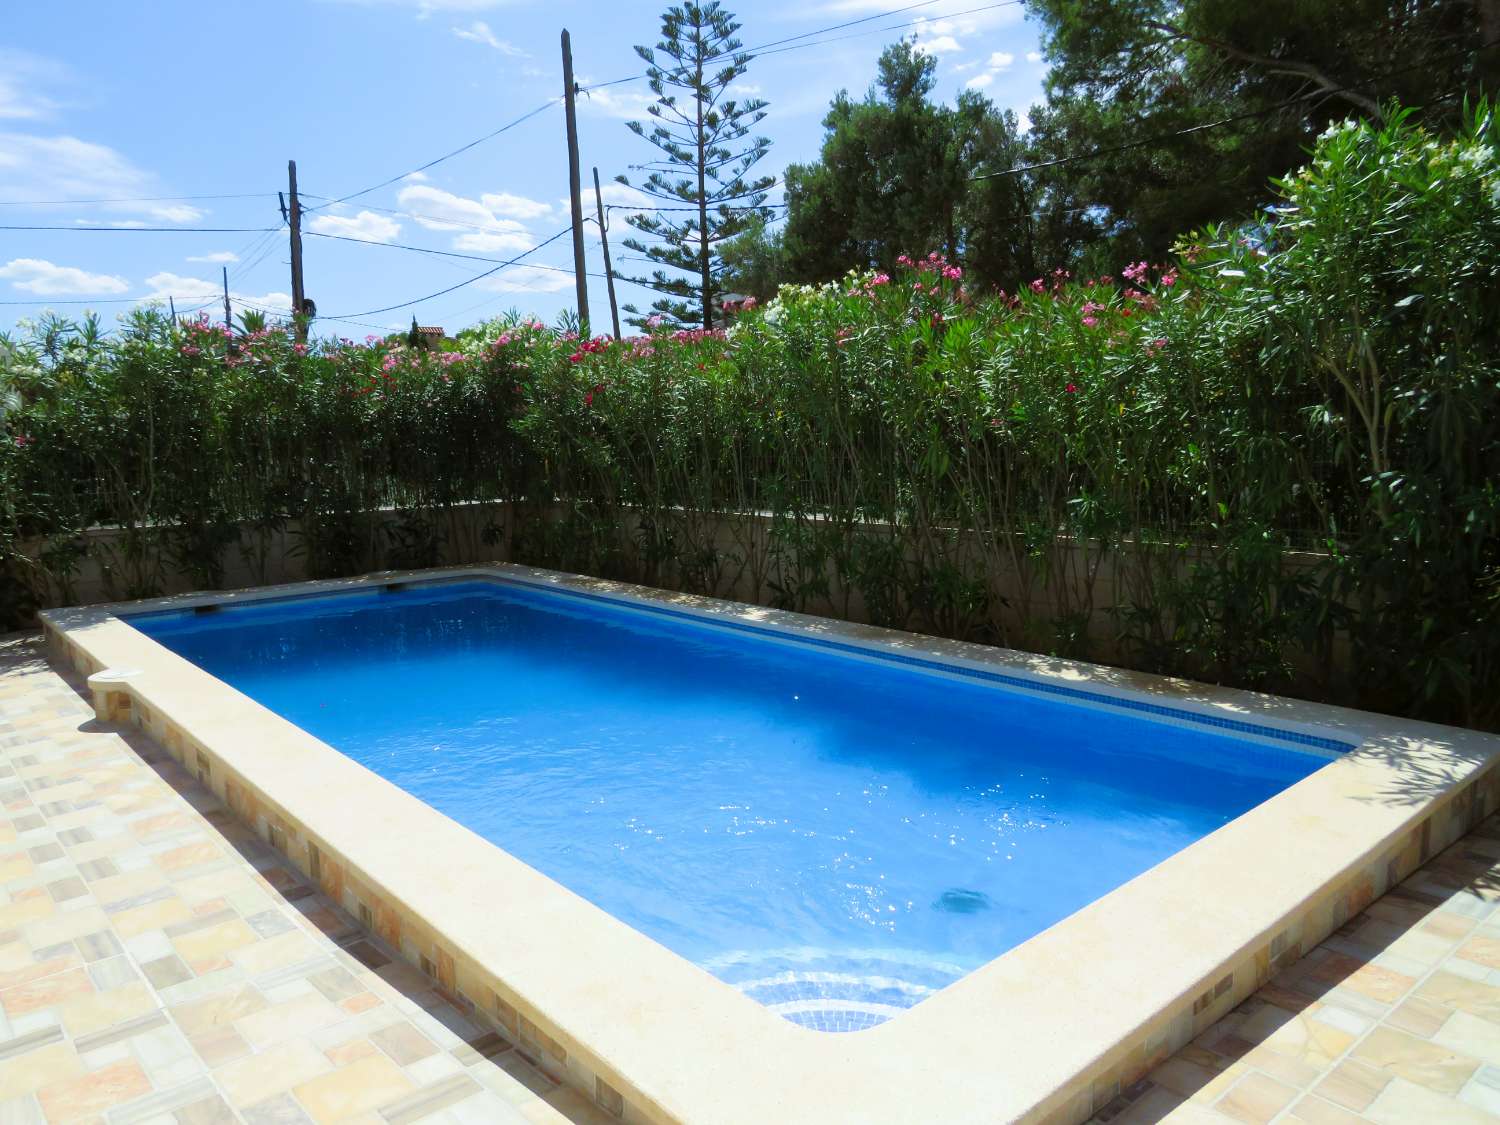 Casa moderna a prop de la platja a la bonica urbanització de Les Tres Cales amb piscina privada i barbacoa.